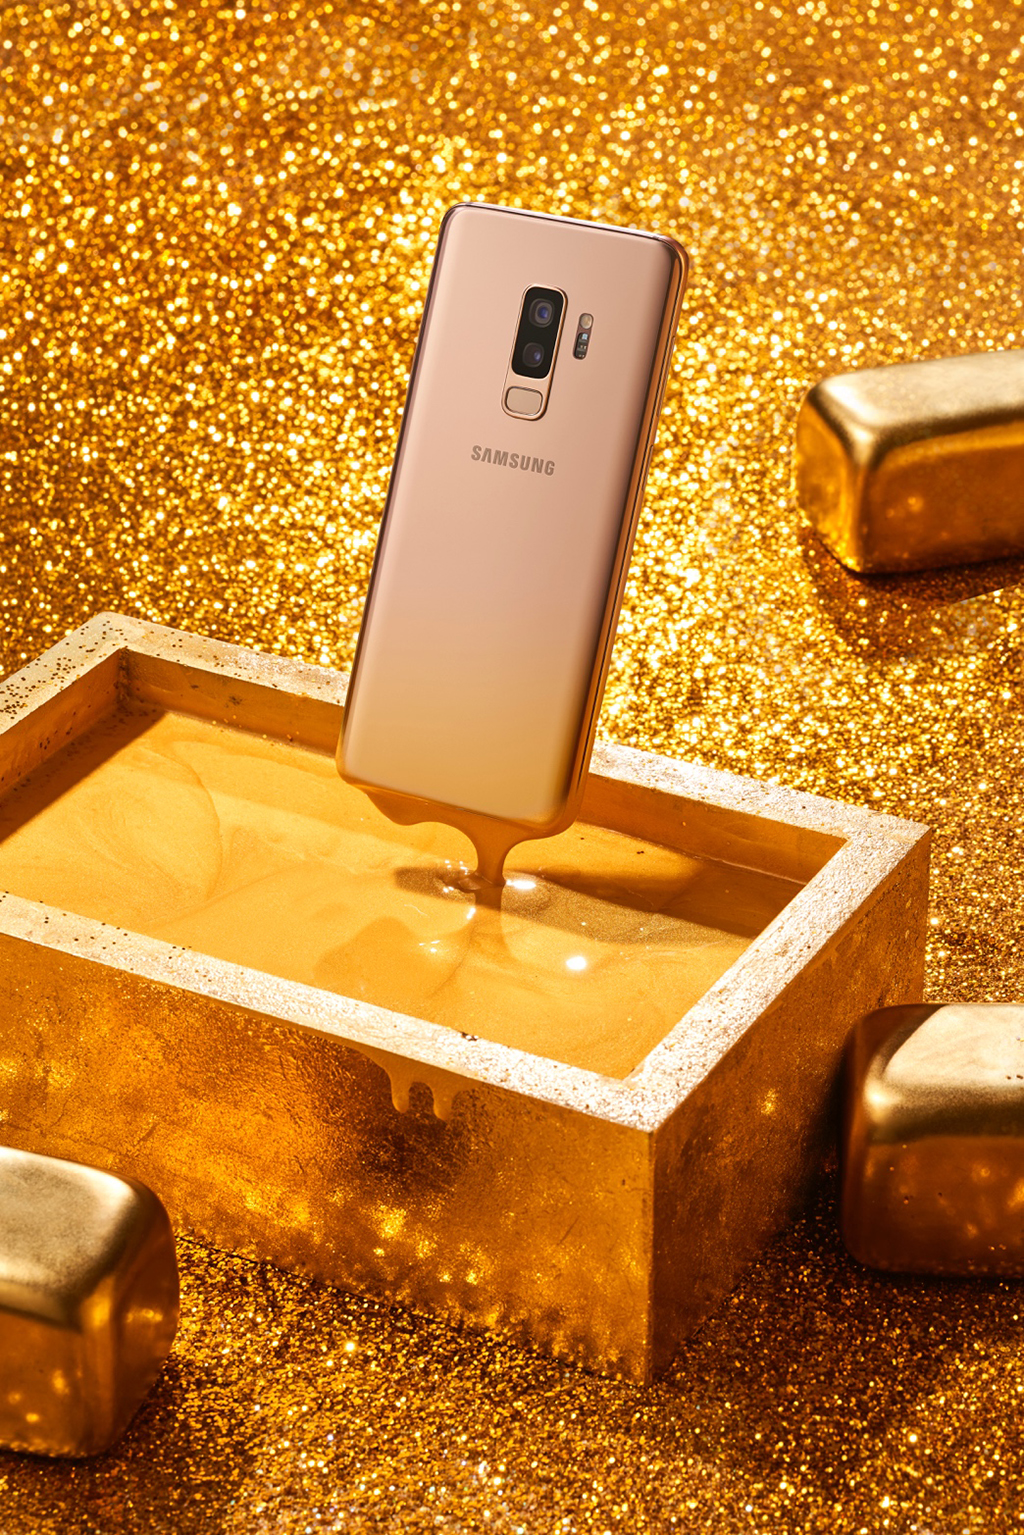 “Trận chiến” giữa Galaxy S9+ Hoàng Kim và những thỏi vàng 24k cũng khiến nhiều người bất ngờ. Một thiết bị công nghệ vẫn có thể cùng đứng chung với “kho báu vàng” mà bao người ao ước và vẫn tỏ rõ đẳng cấp không hề kém cạnh